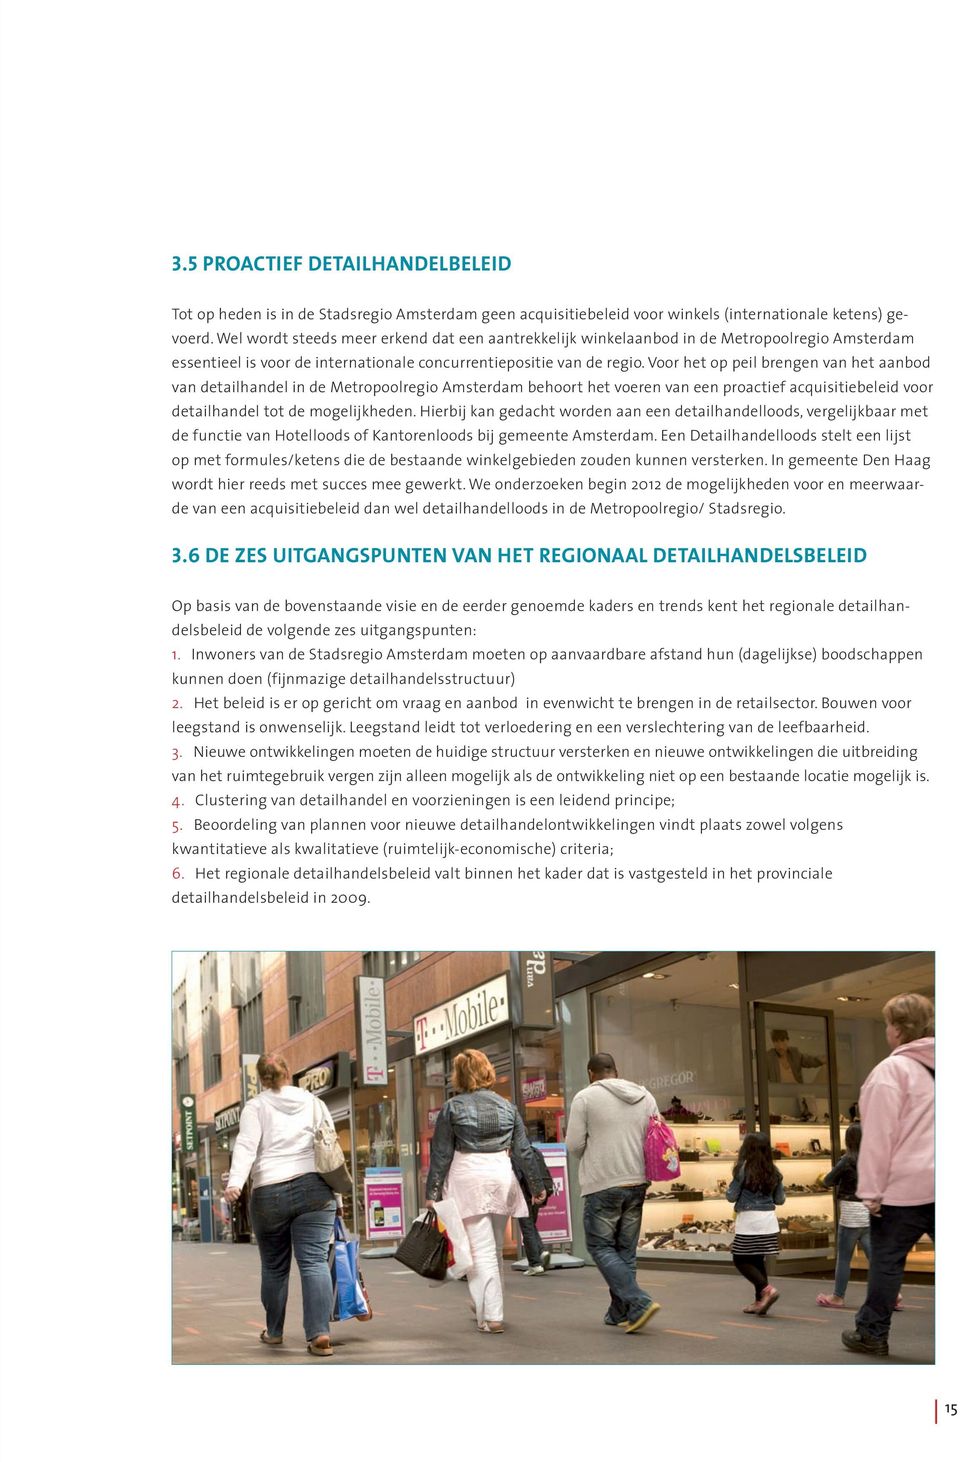 Voor het op peil brengen van het aanbod van detailhandel in de Metropoolregio Amsterdam behoort het voeren van een proactief acquisitiebeleid voor detailhandel tot de mogelijkheden.